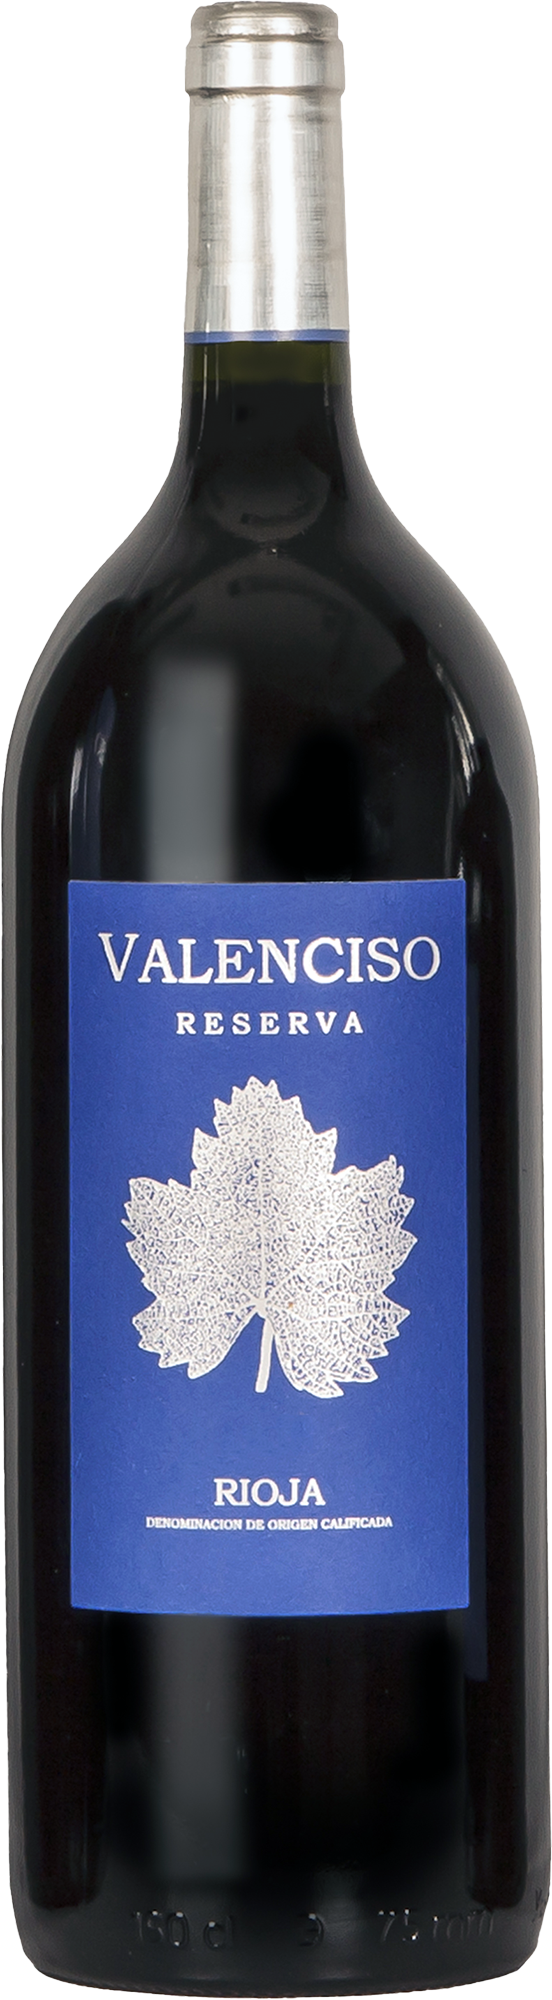 Valenciso Rioja Reserva 2018 (1500ml)